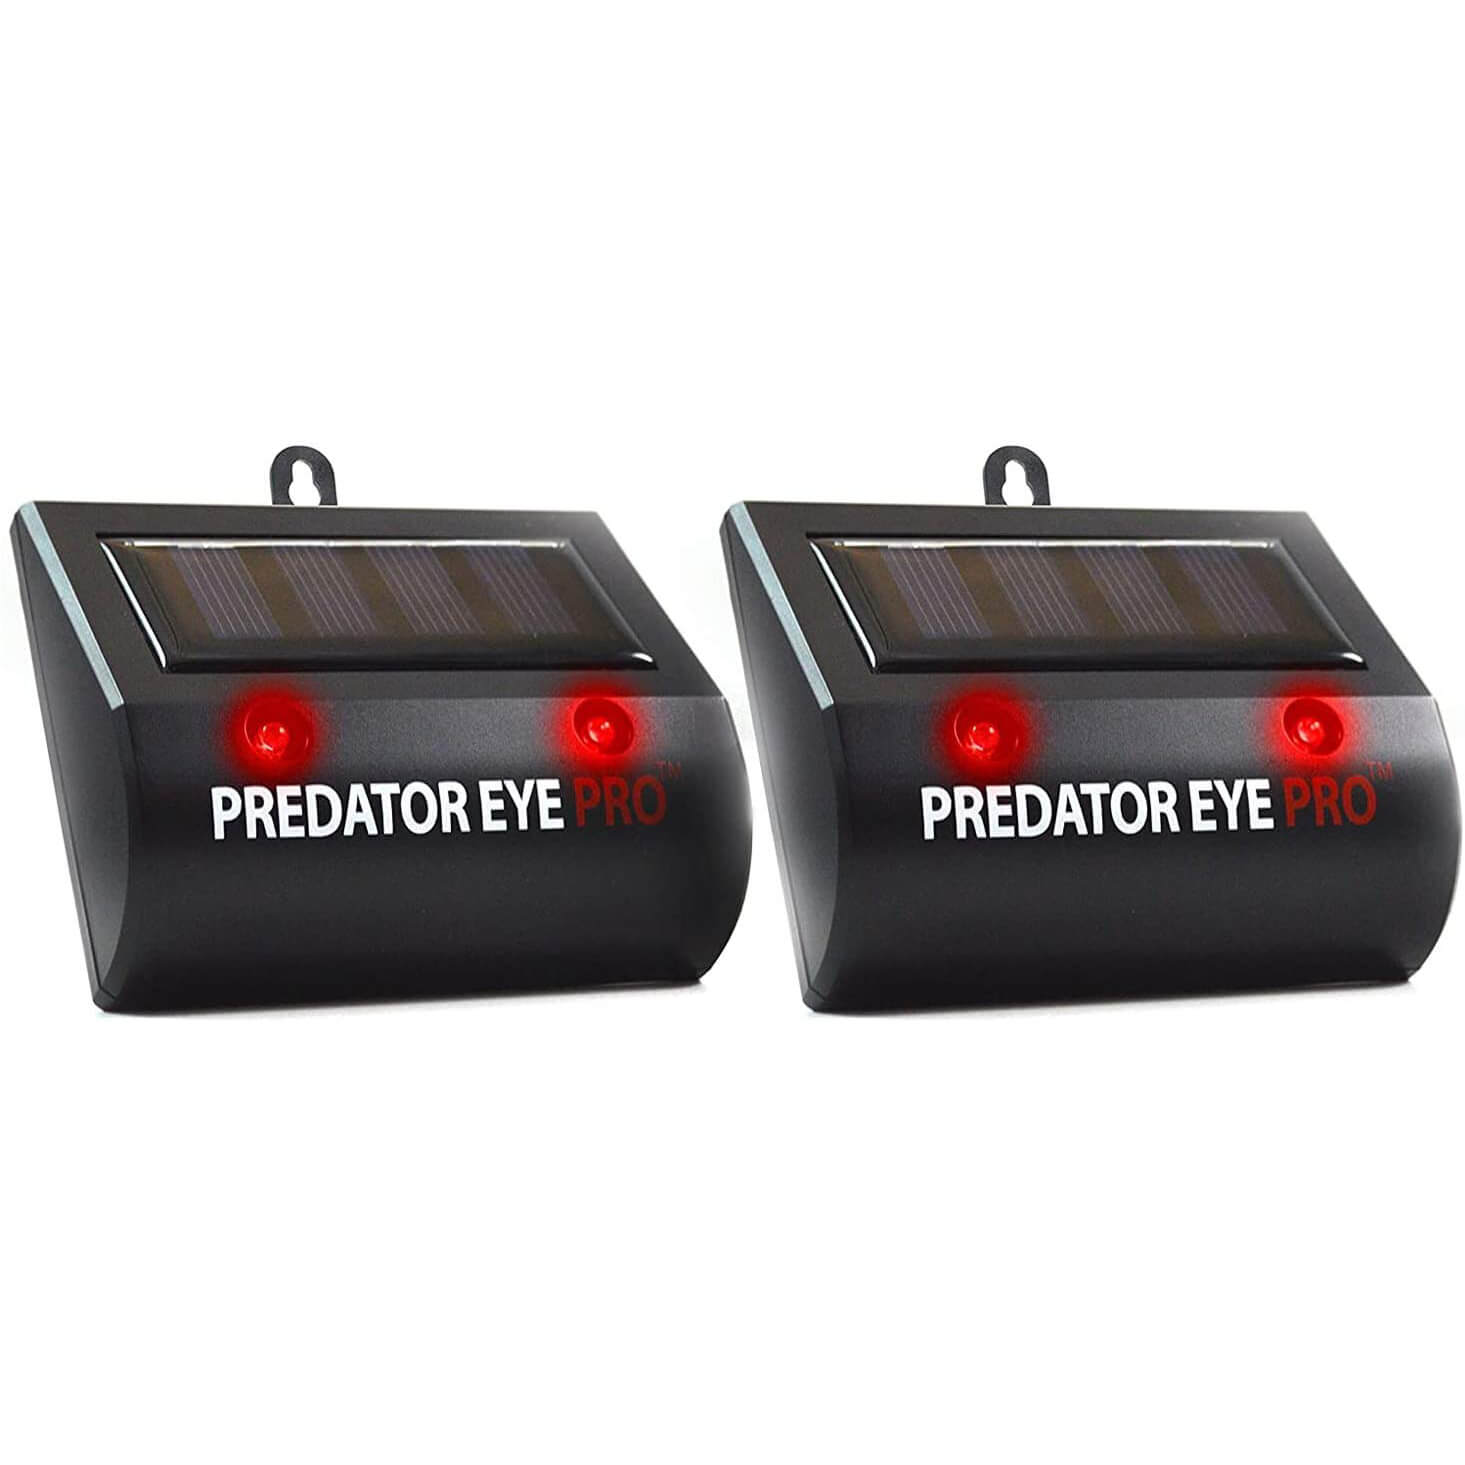 ASPECTEK Solar Powered Eye Pro Predator Deterrent Light